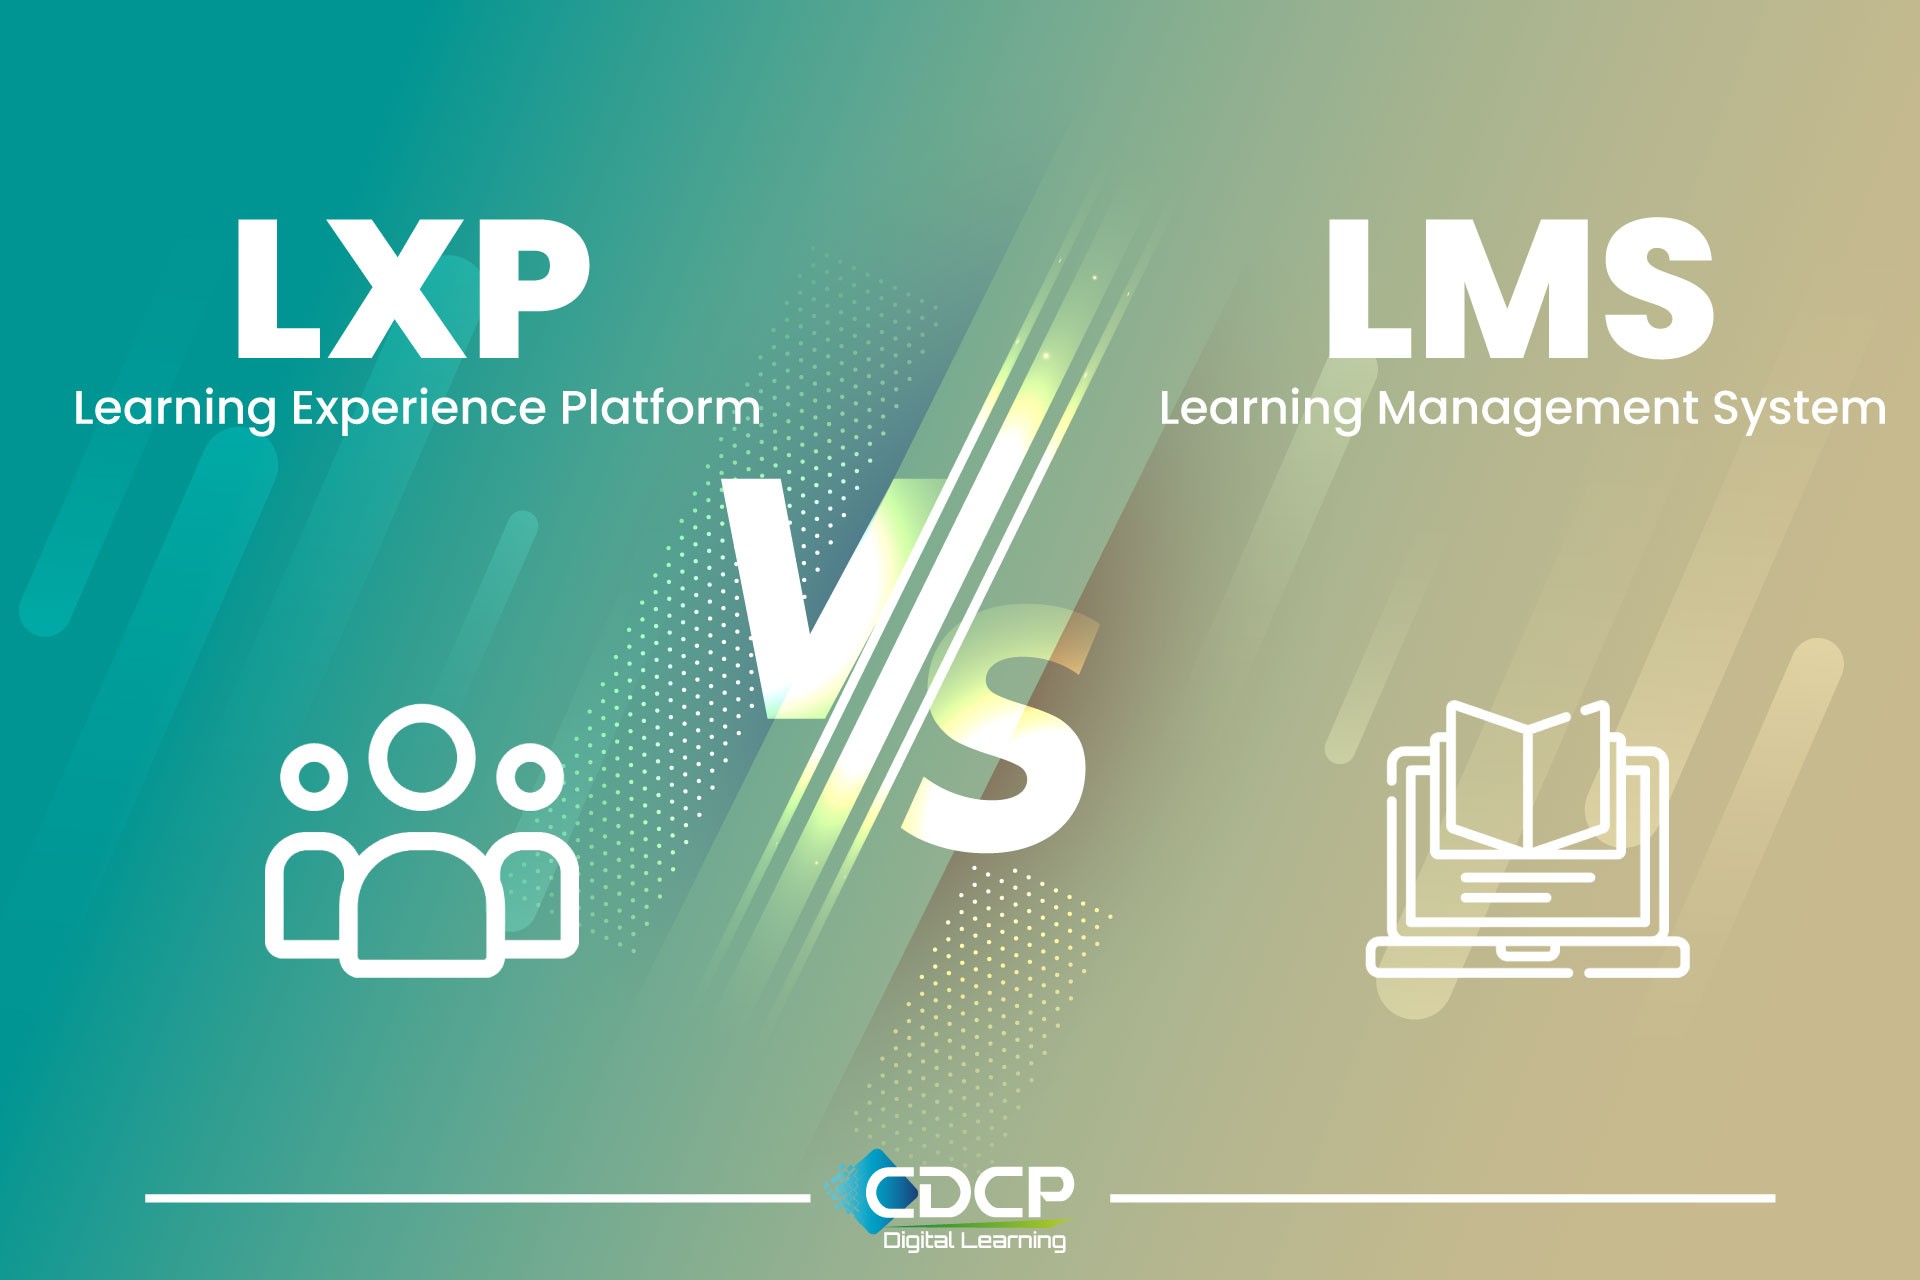 lms-vs-LXP-